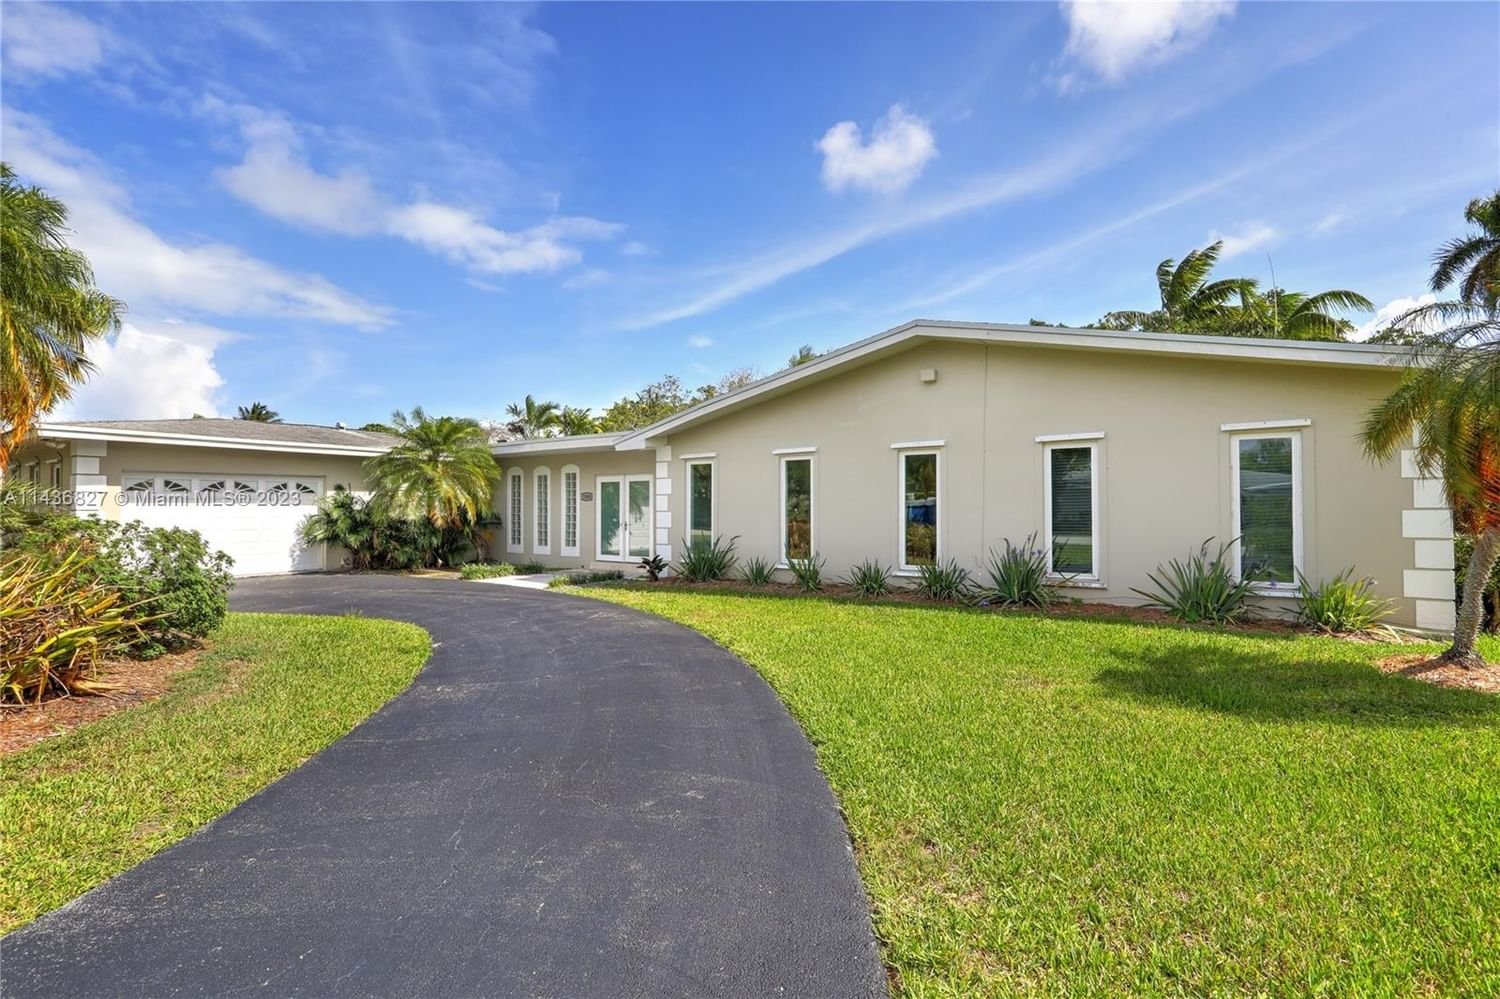 Real estate property located at 7480 159th Ter, Miami-Dade County, PALMETTO ROAD ESTS, Palmetto Bay, FL